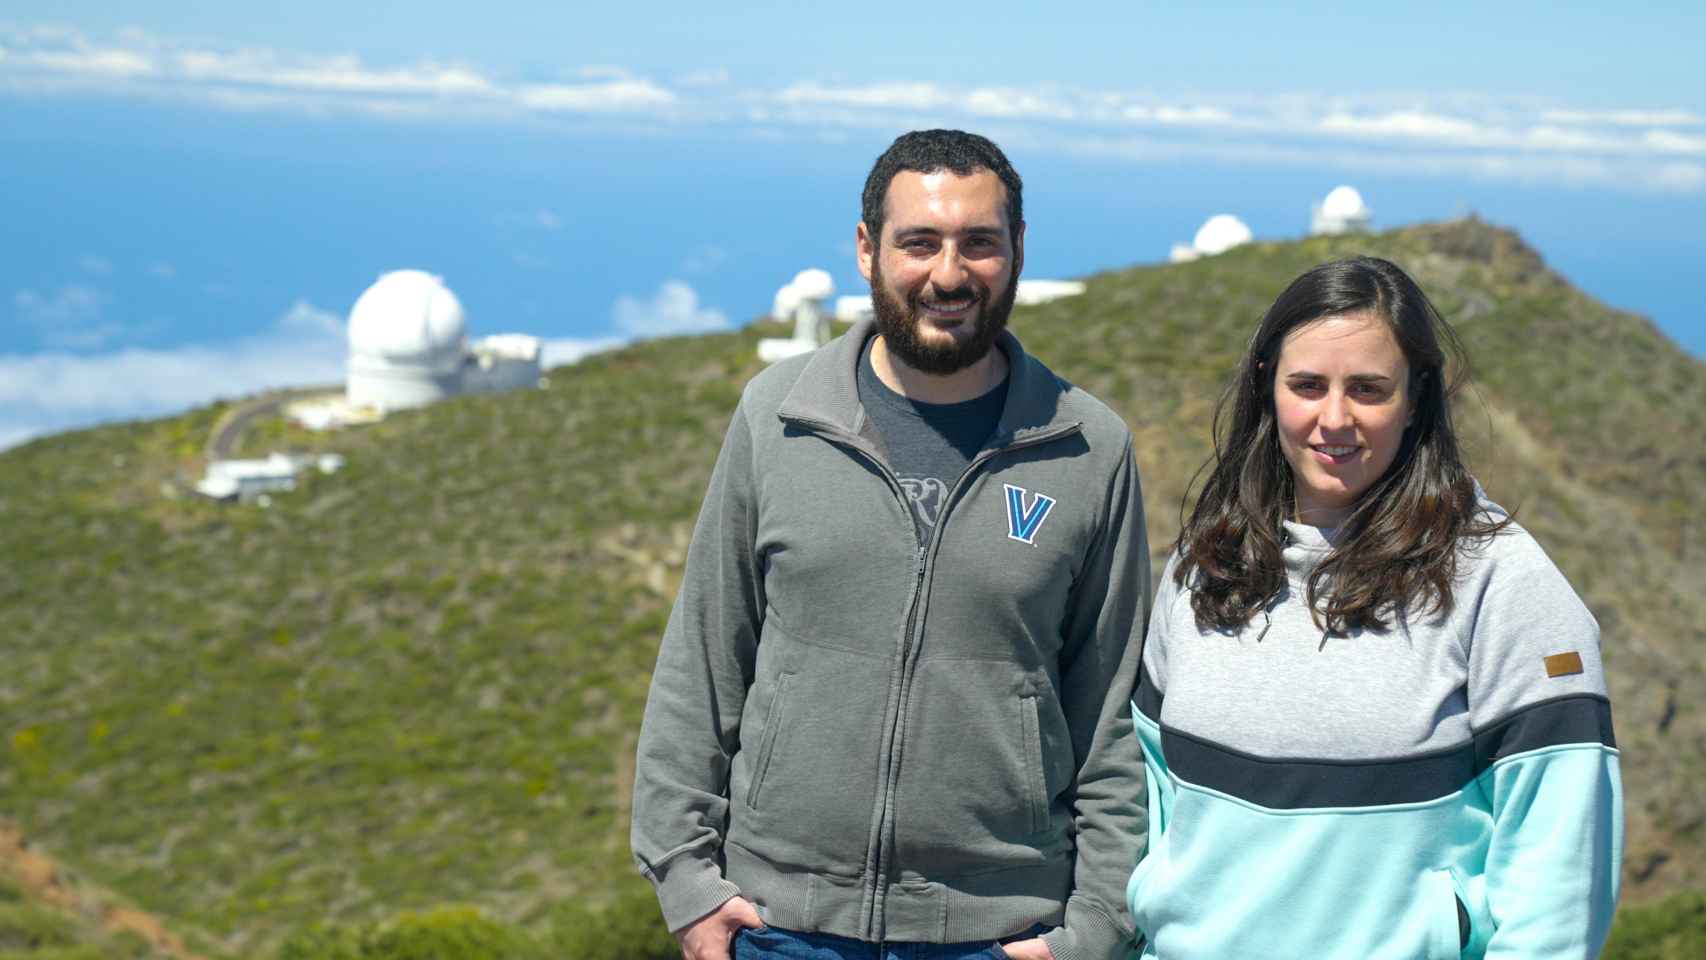 El matrimonio de astrofísicos que recorre el mundo estudiando el espacio y las estrellas